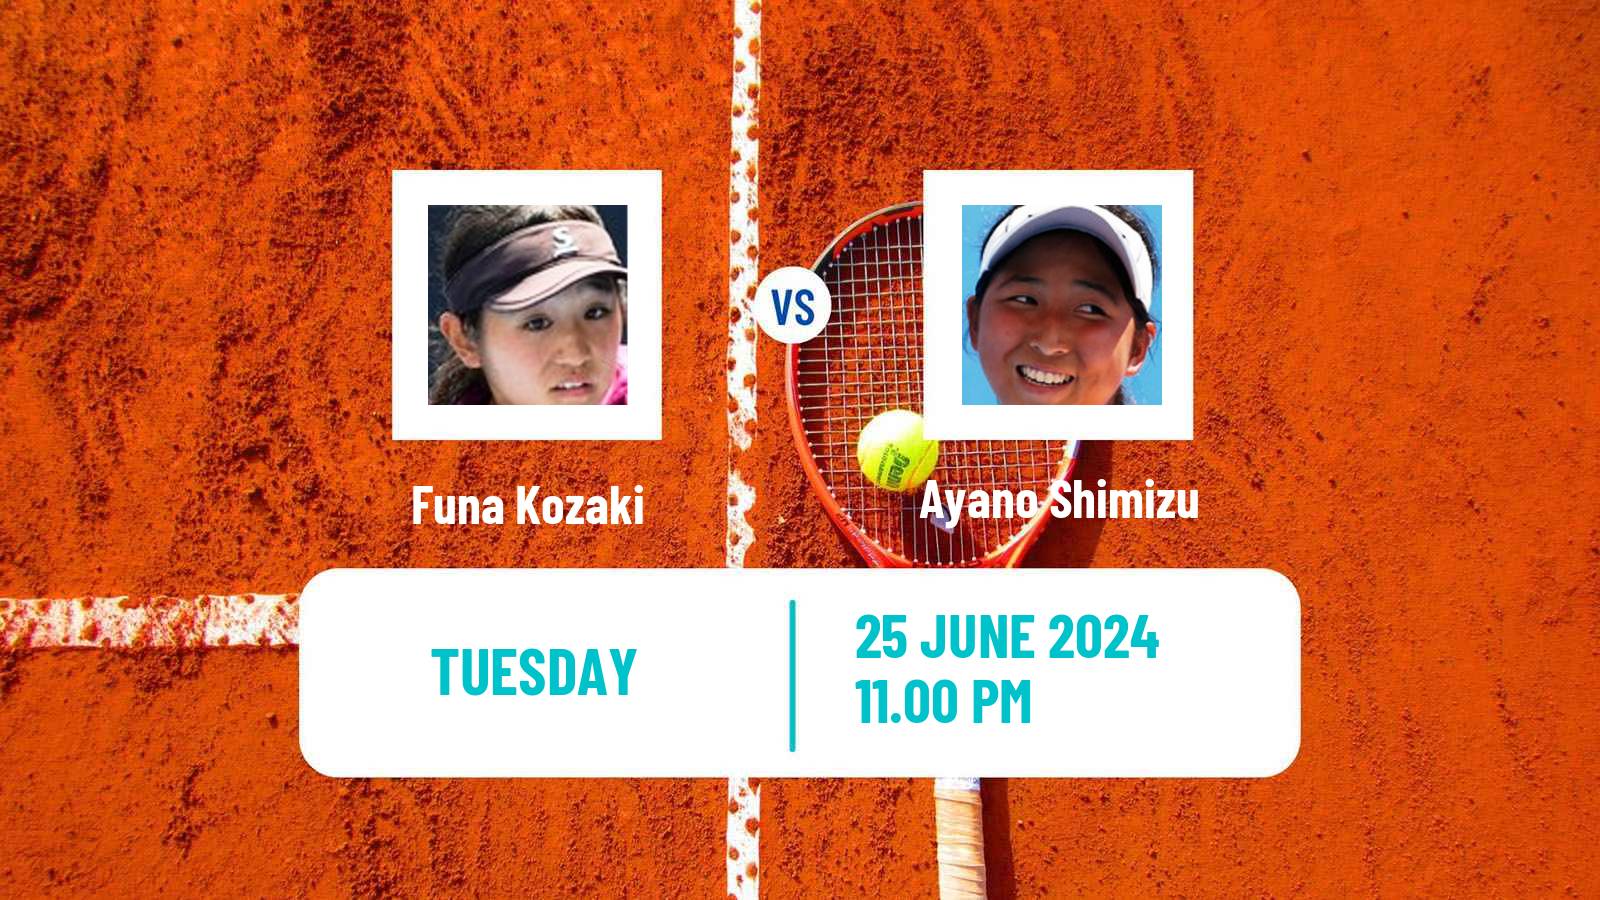 Tennis ITF W35 Taipei 2 Women Funa Kozaki - Ayano Shimizu